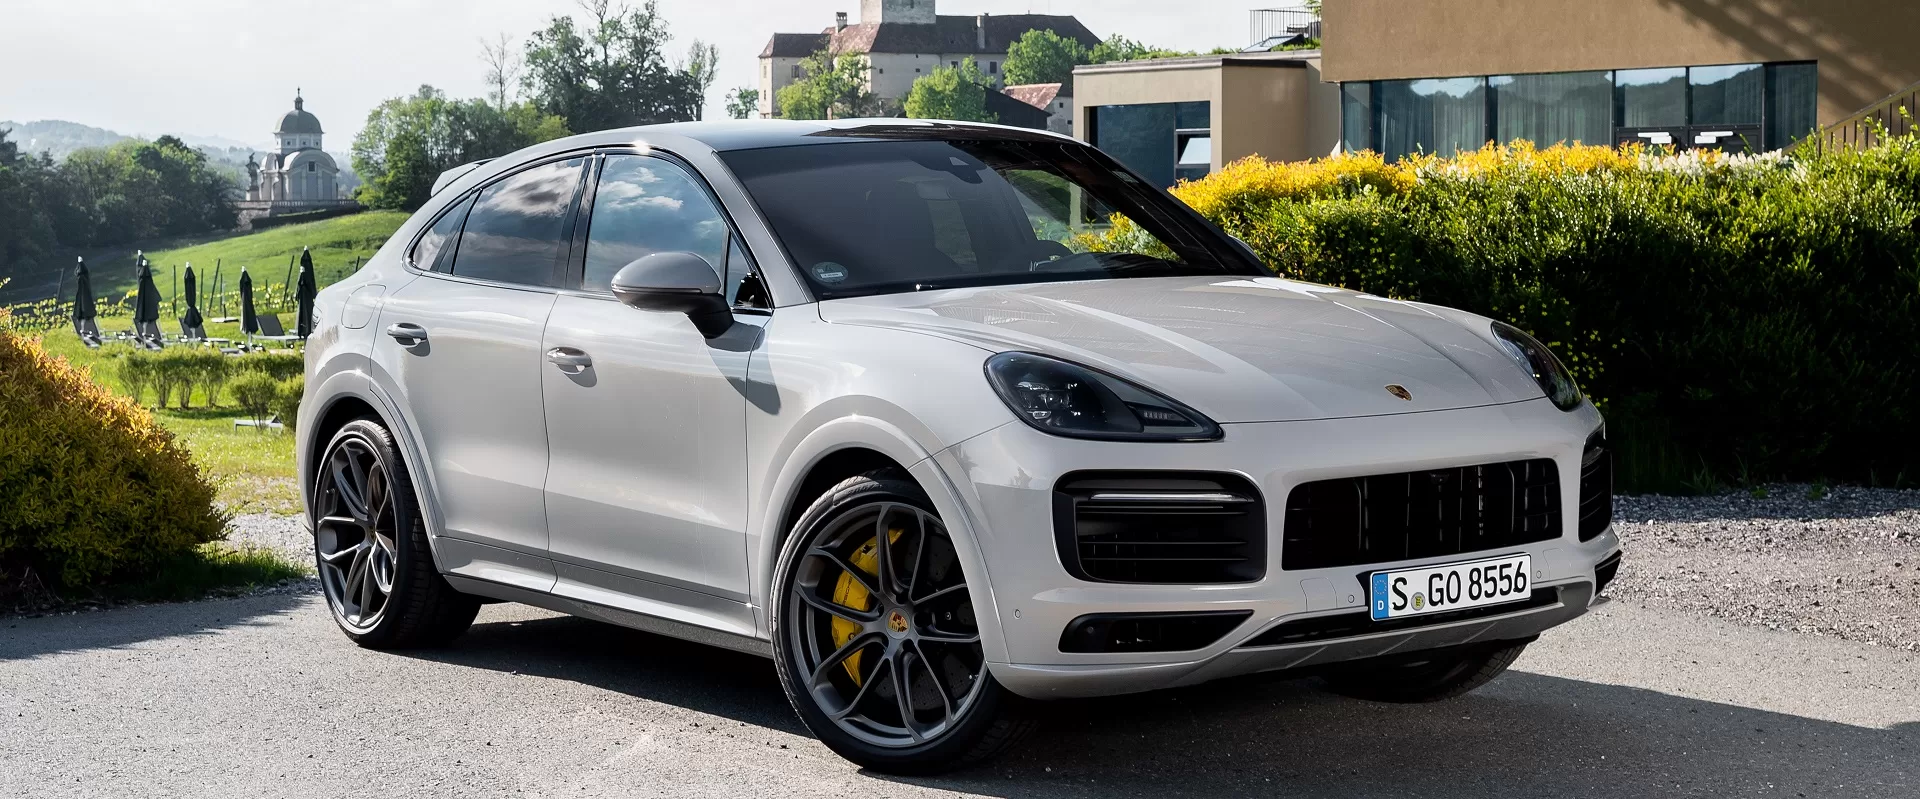 Porsche Drive: новое поколение выбирает аренду